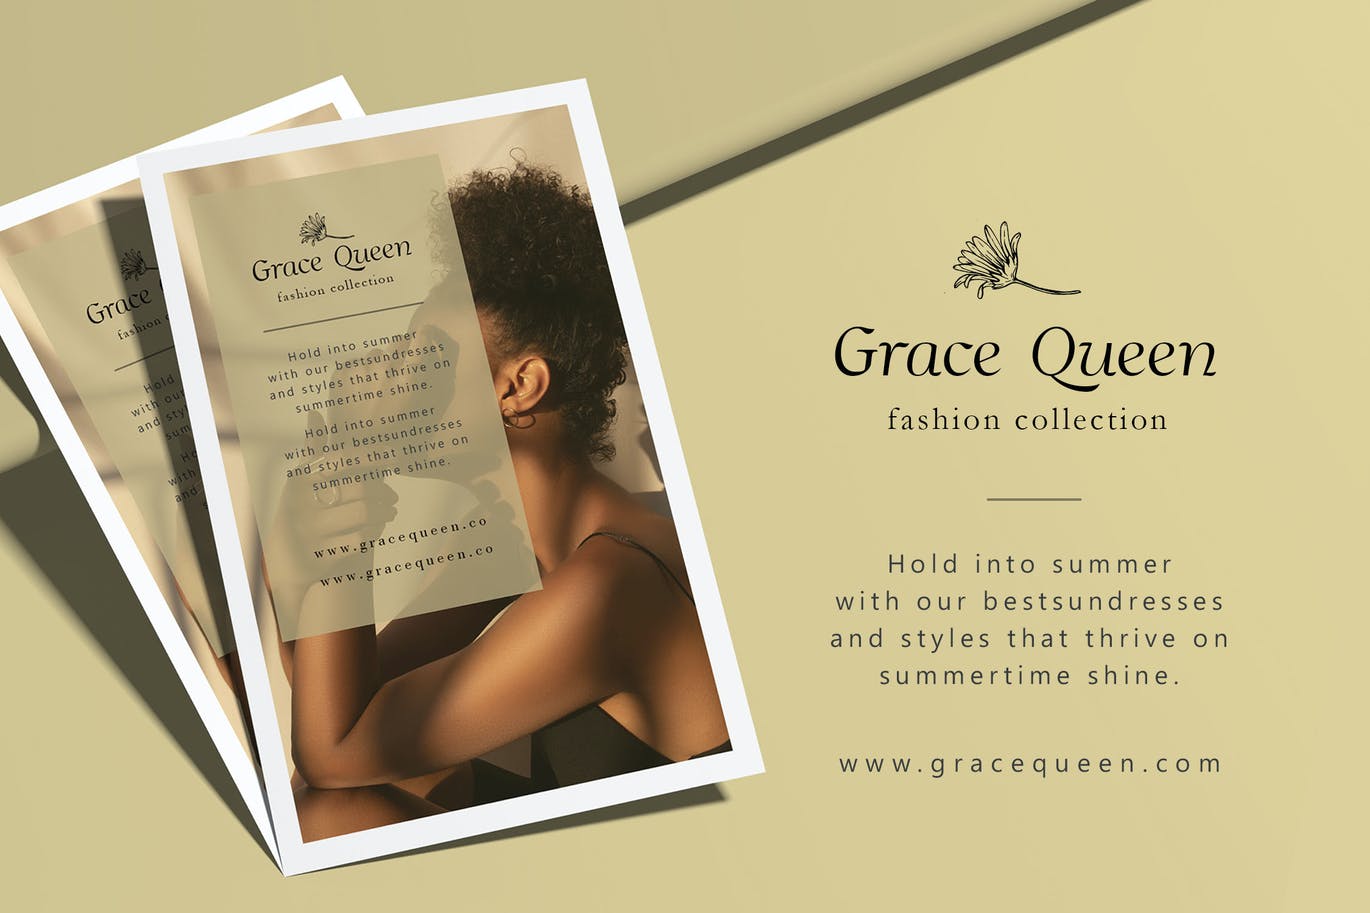 优雅时尚魅力的奢侈女性艺术品牌宣传斜体衬线英文字体 Grac